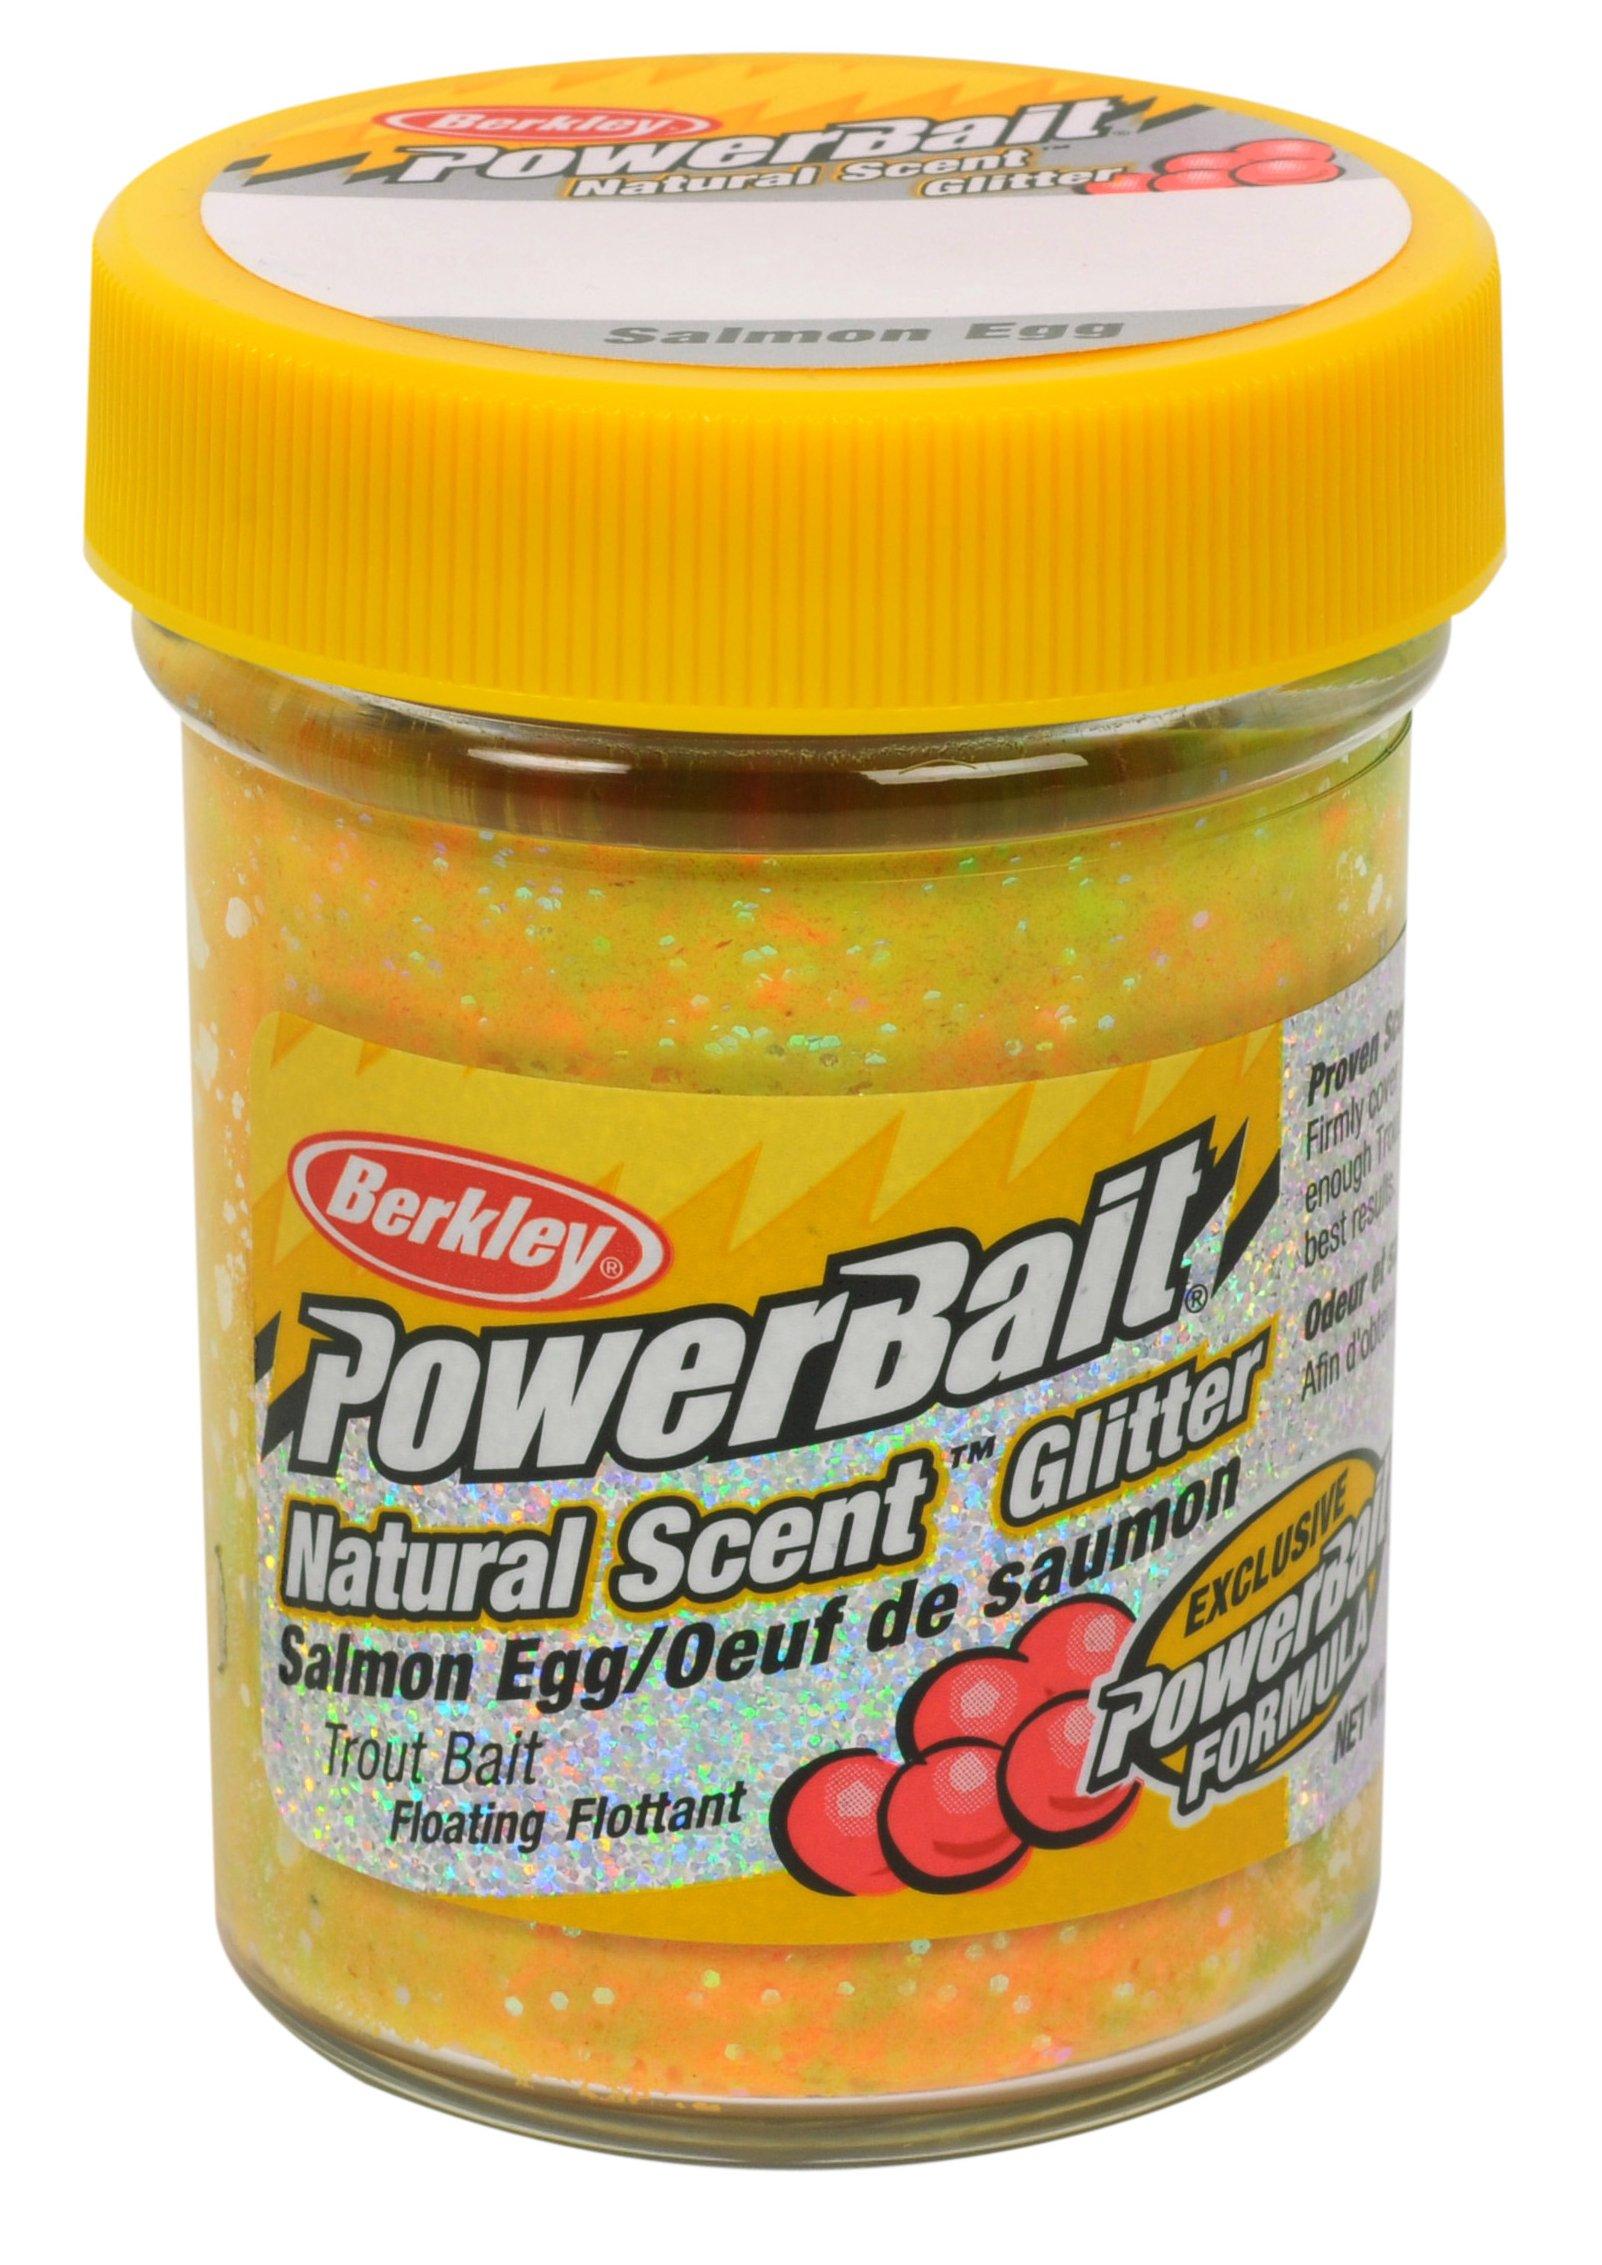 Berkley Powerbait Natural Scent Trout Bait Glitter Bloodworm Chartre 